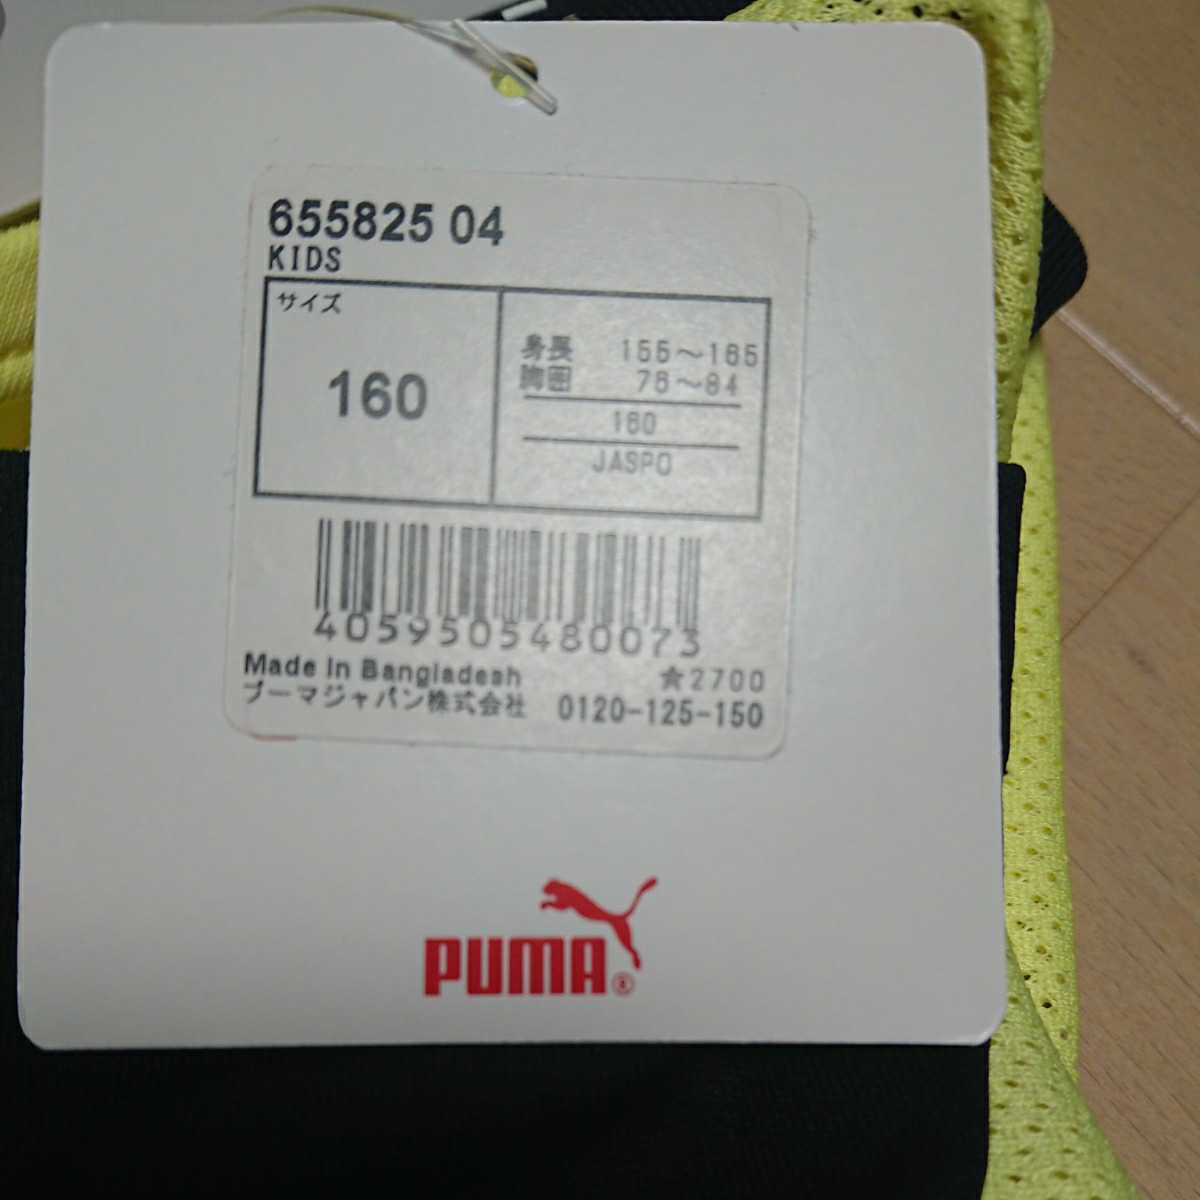  с биркой PUMA Puma короткий рукав p Ractis рубашка 160 размер желтый 